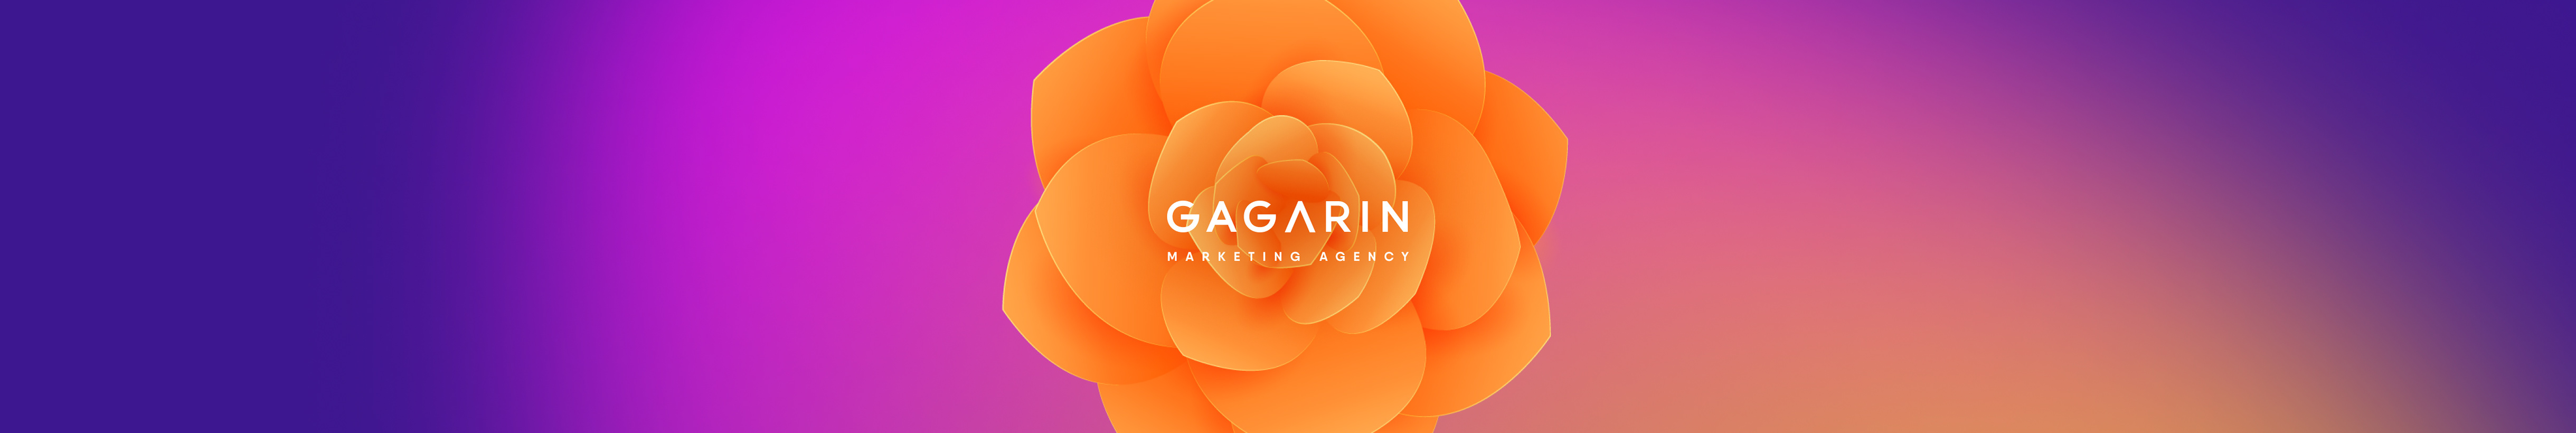 Marketing Gagarin's profile banner